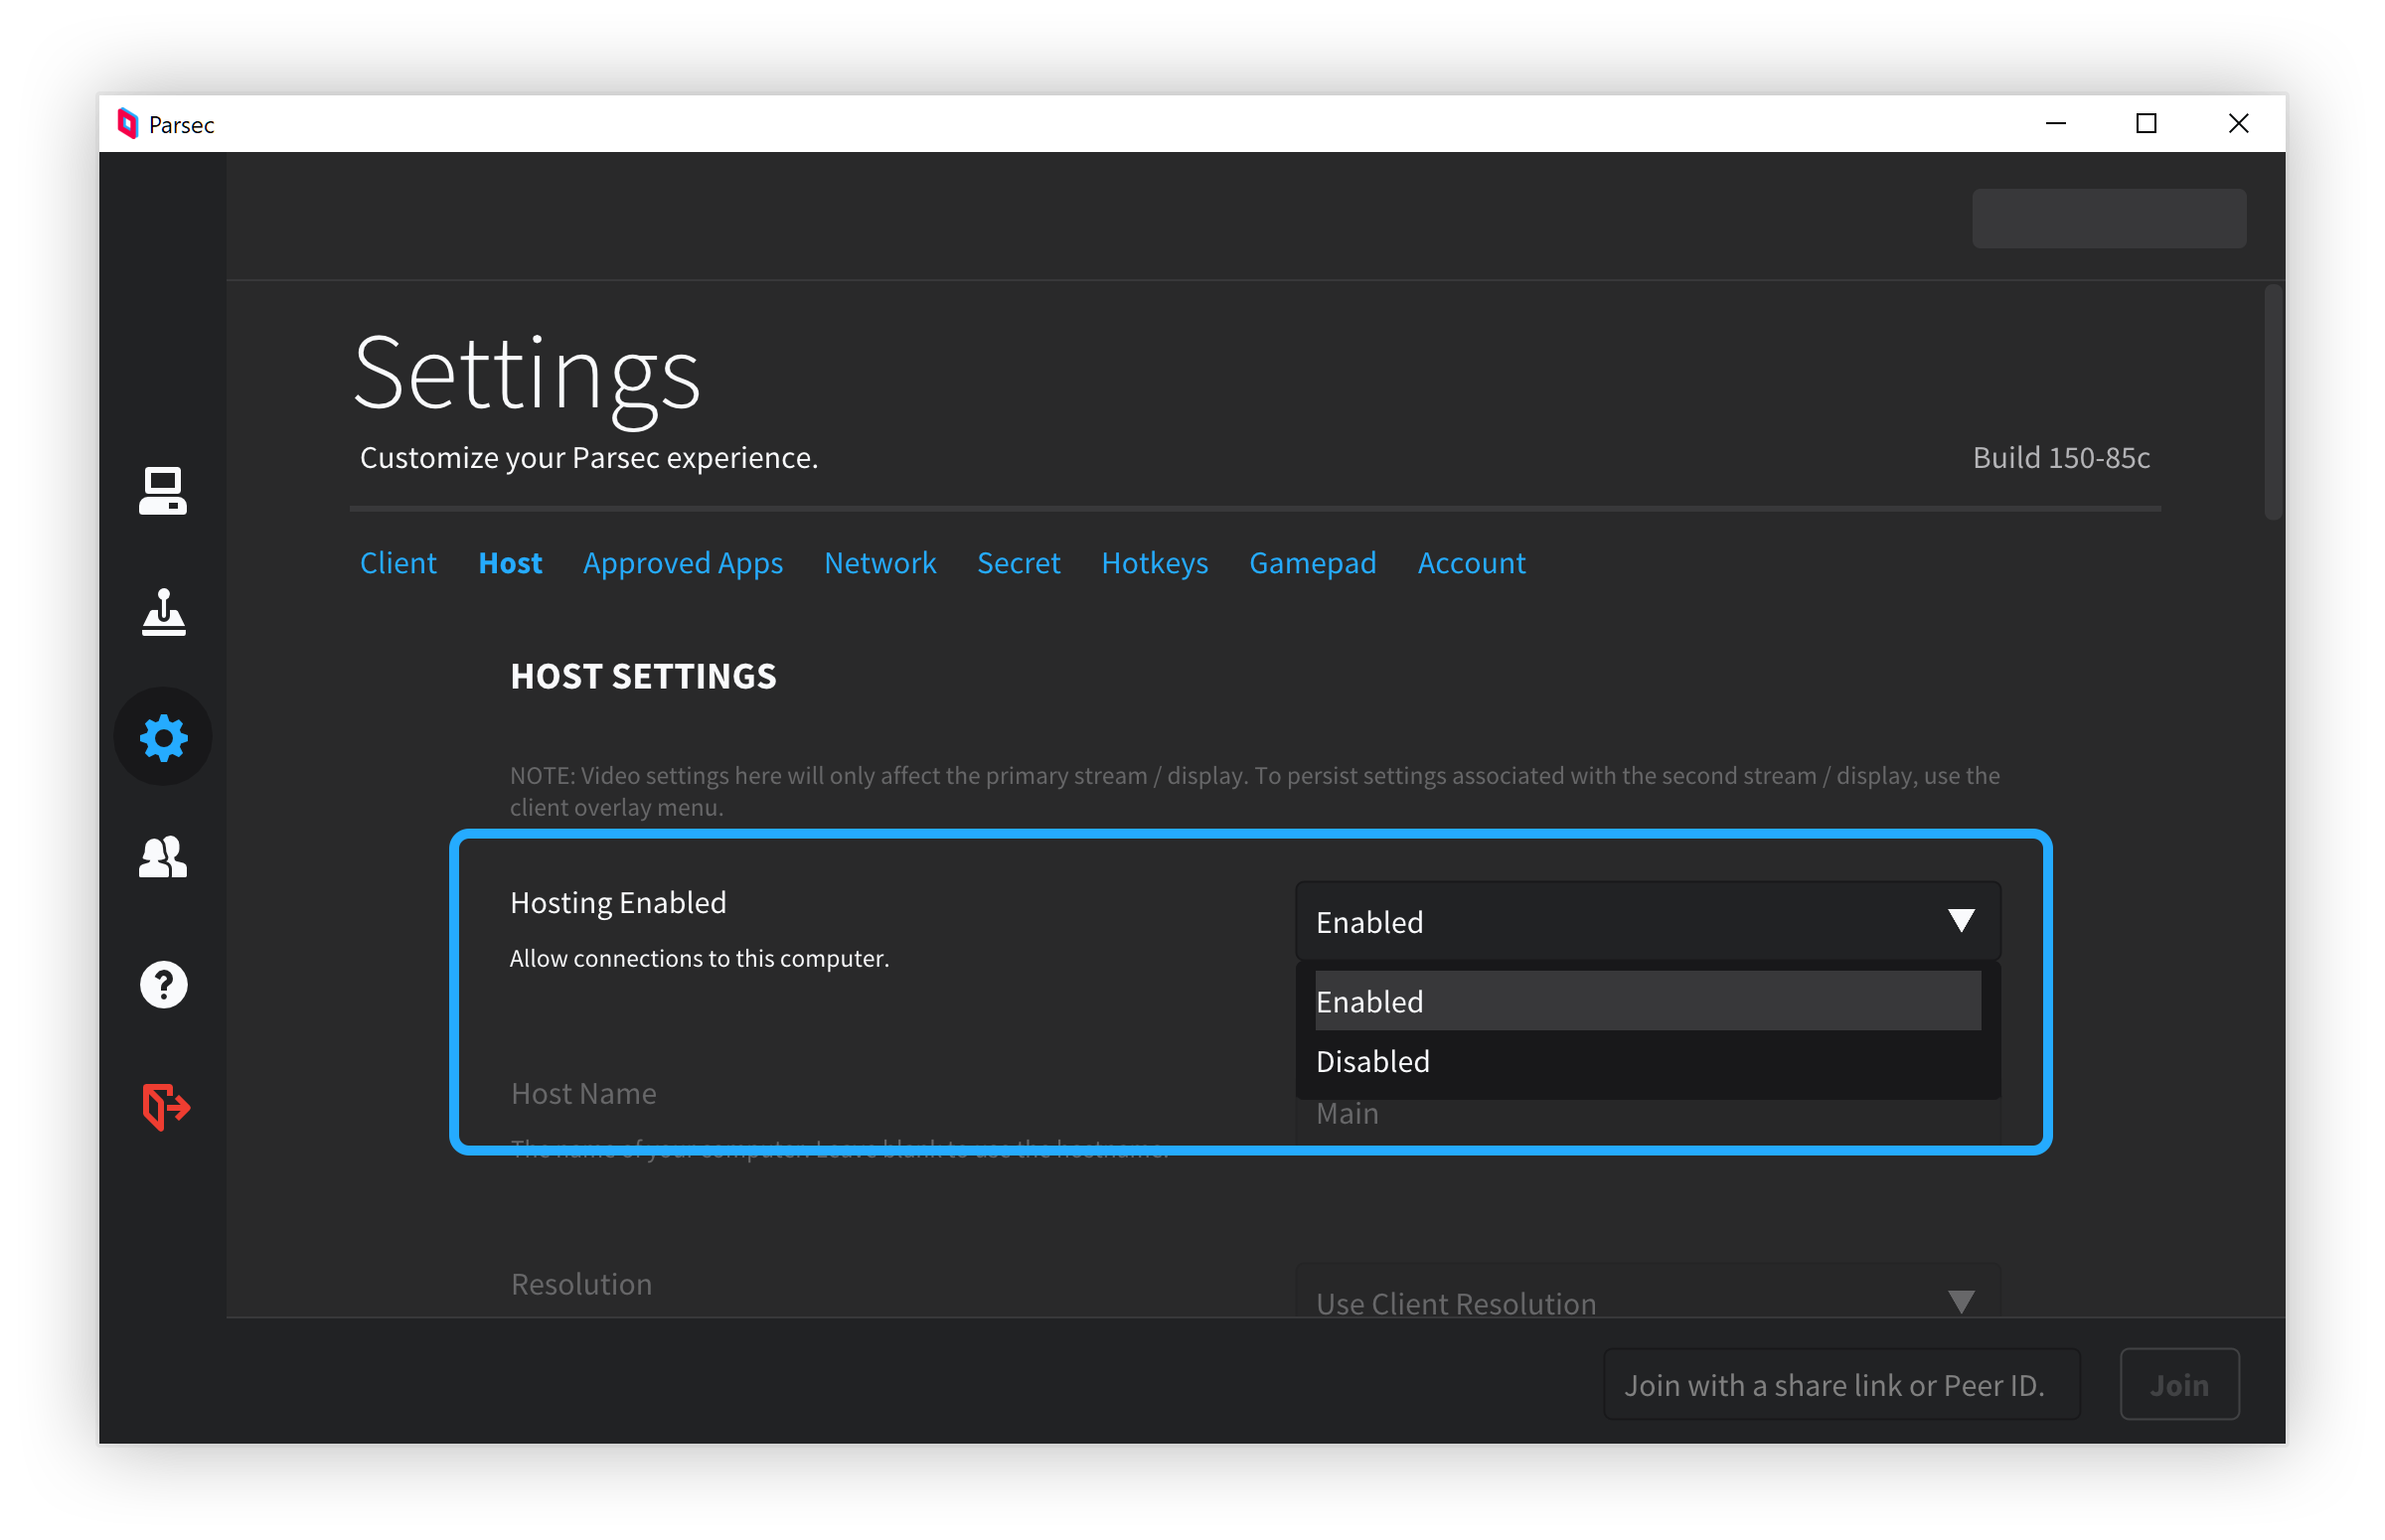 host_settings_enable_hosting.png